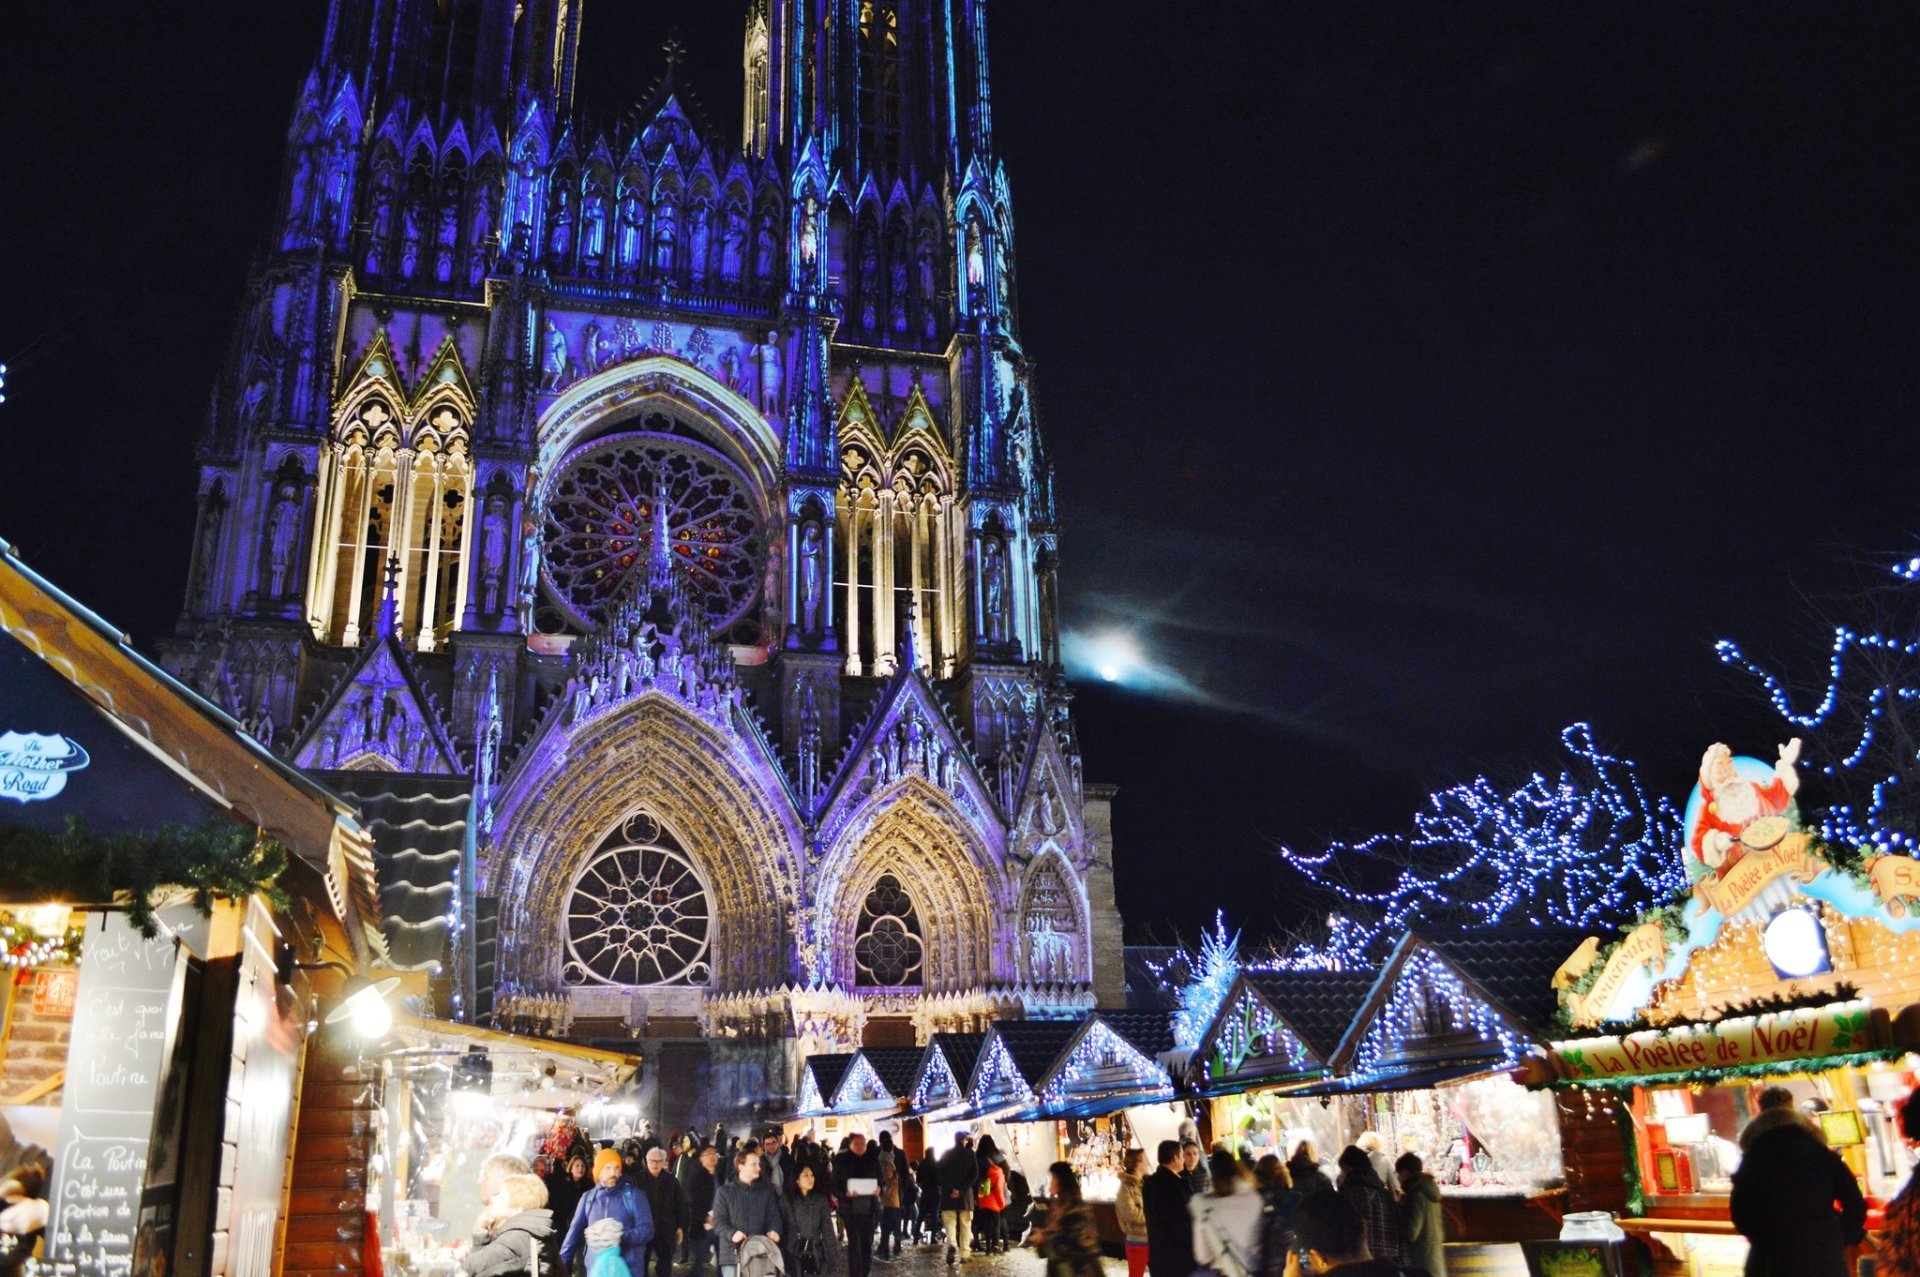 Marché de Noël de Reims